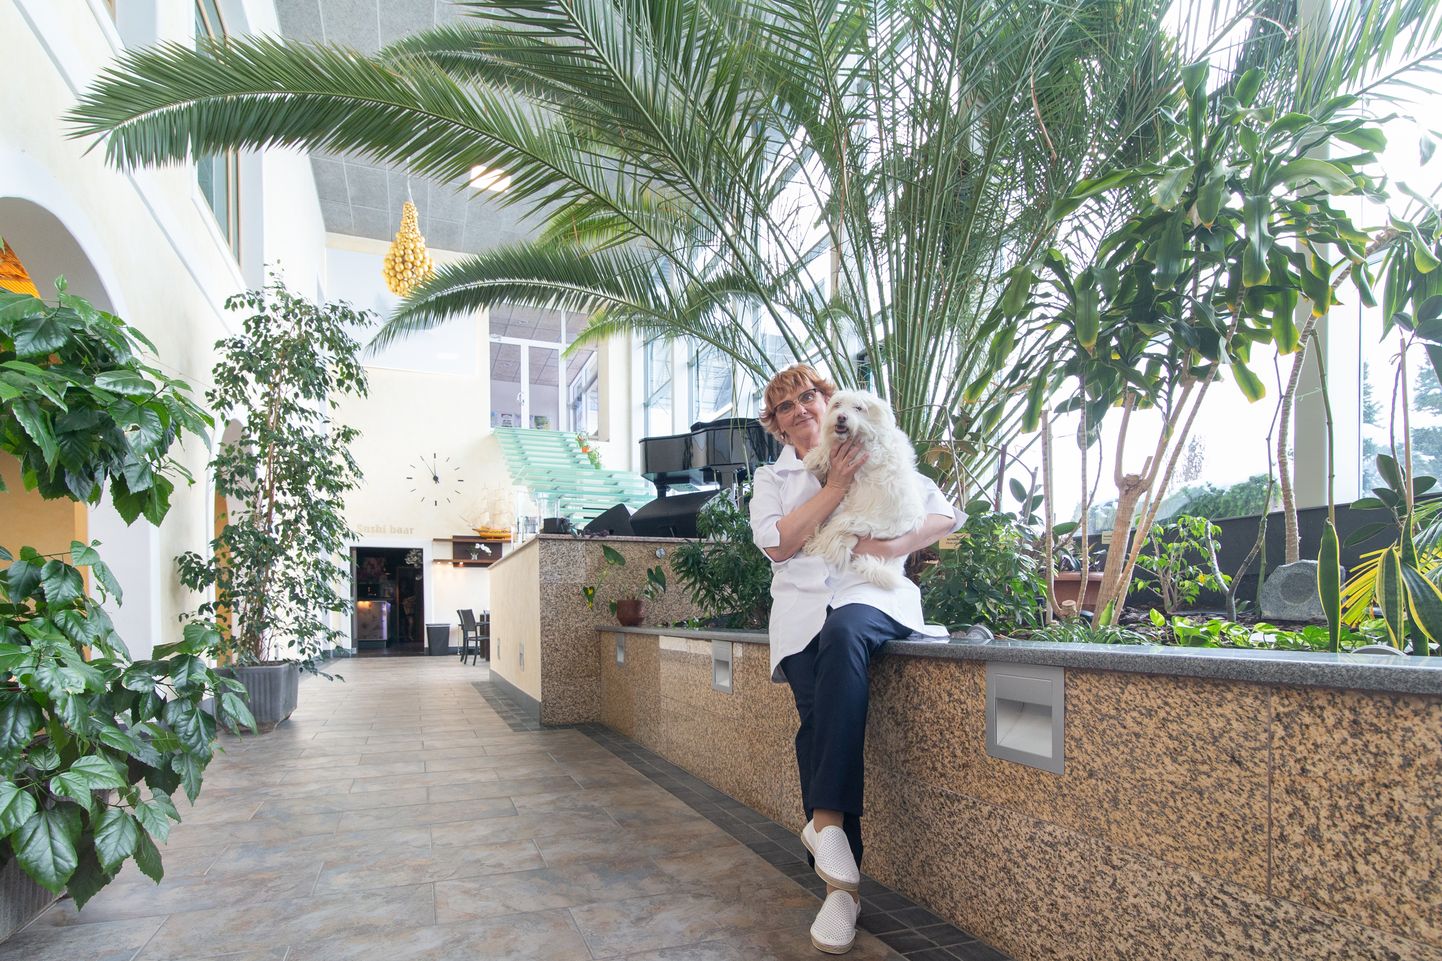 Главврач Татьяна Ильвес, как и весь персонал спа-отеля "Toila", а также спа-собака Белла в понедельник радовались, что в доме снова пробуждается жизнь. После перерыва двери открыли wellness-центр "Orhidee" (на снимке) и термы.